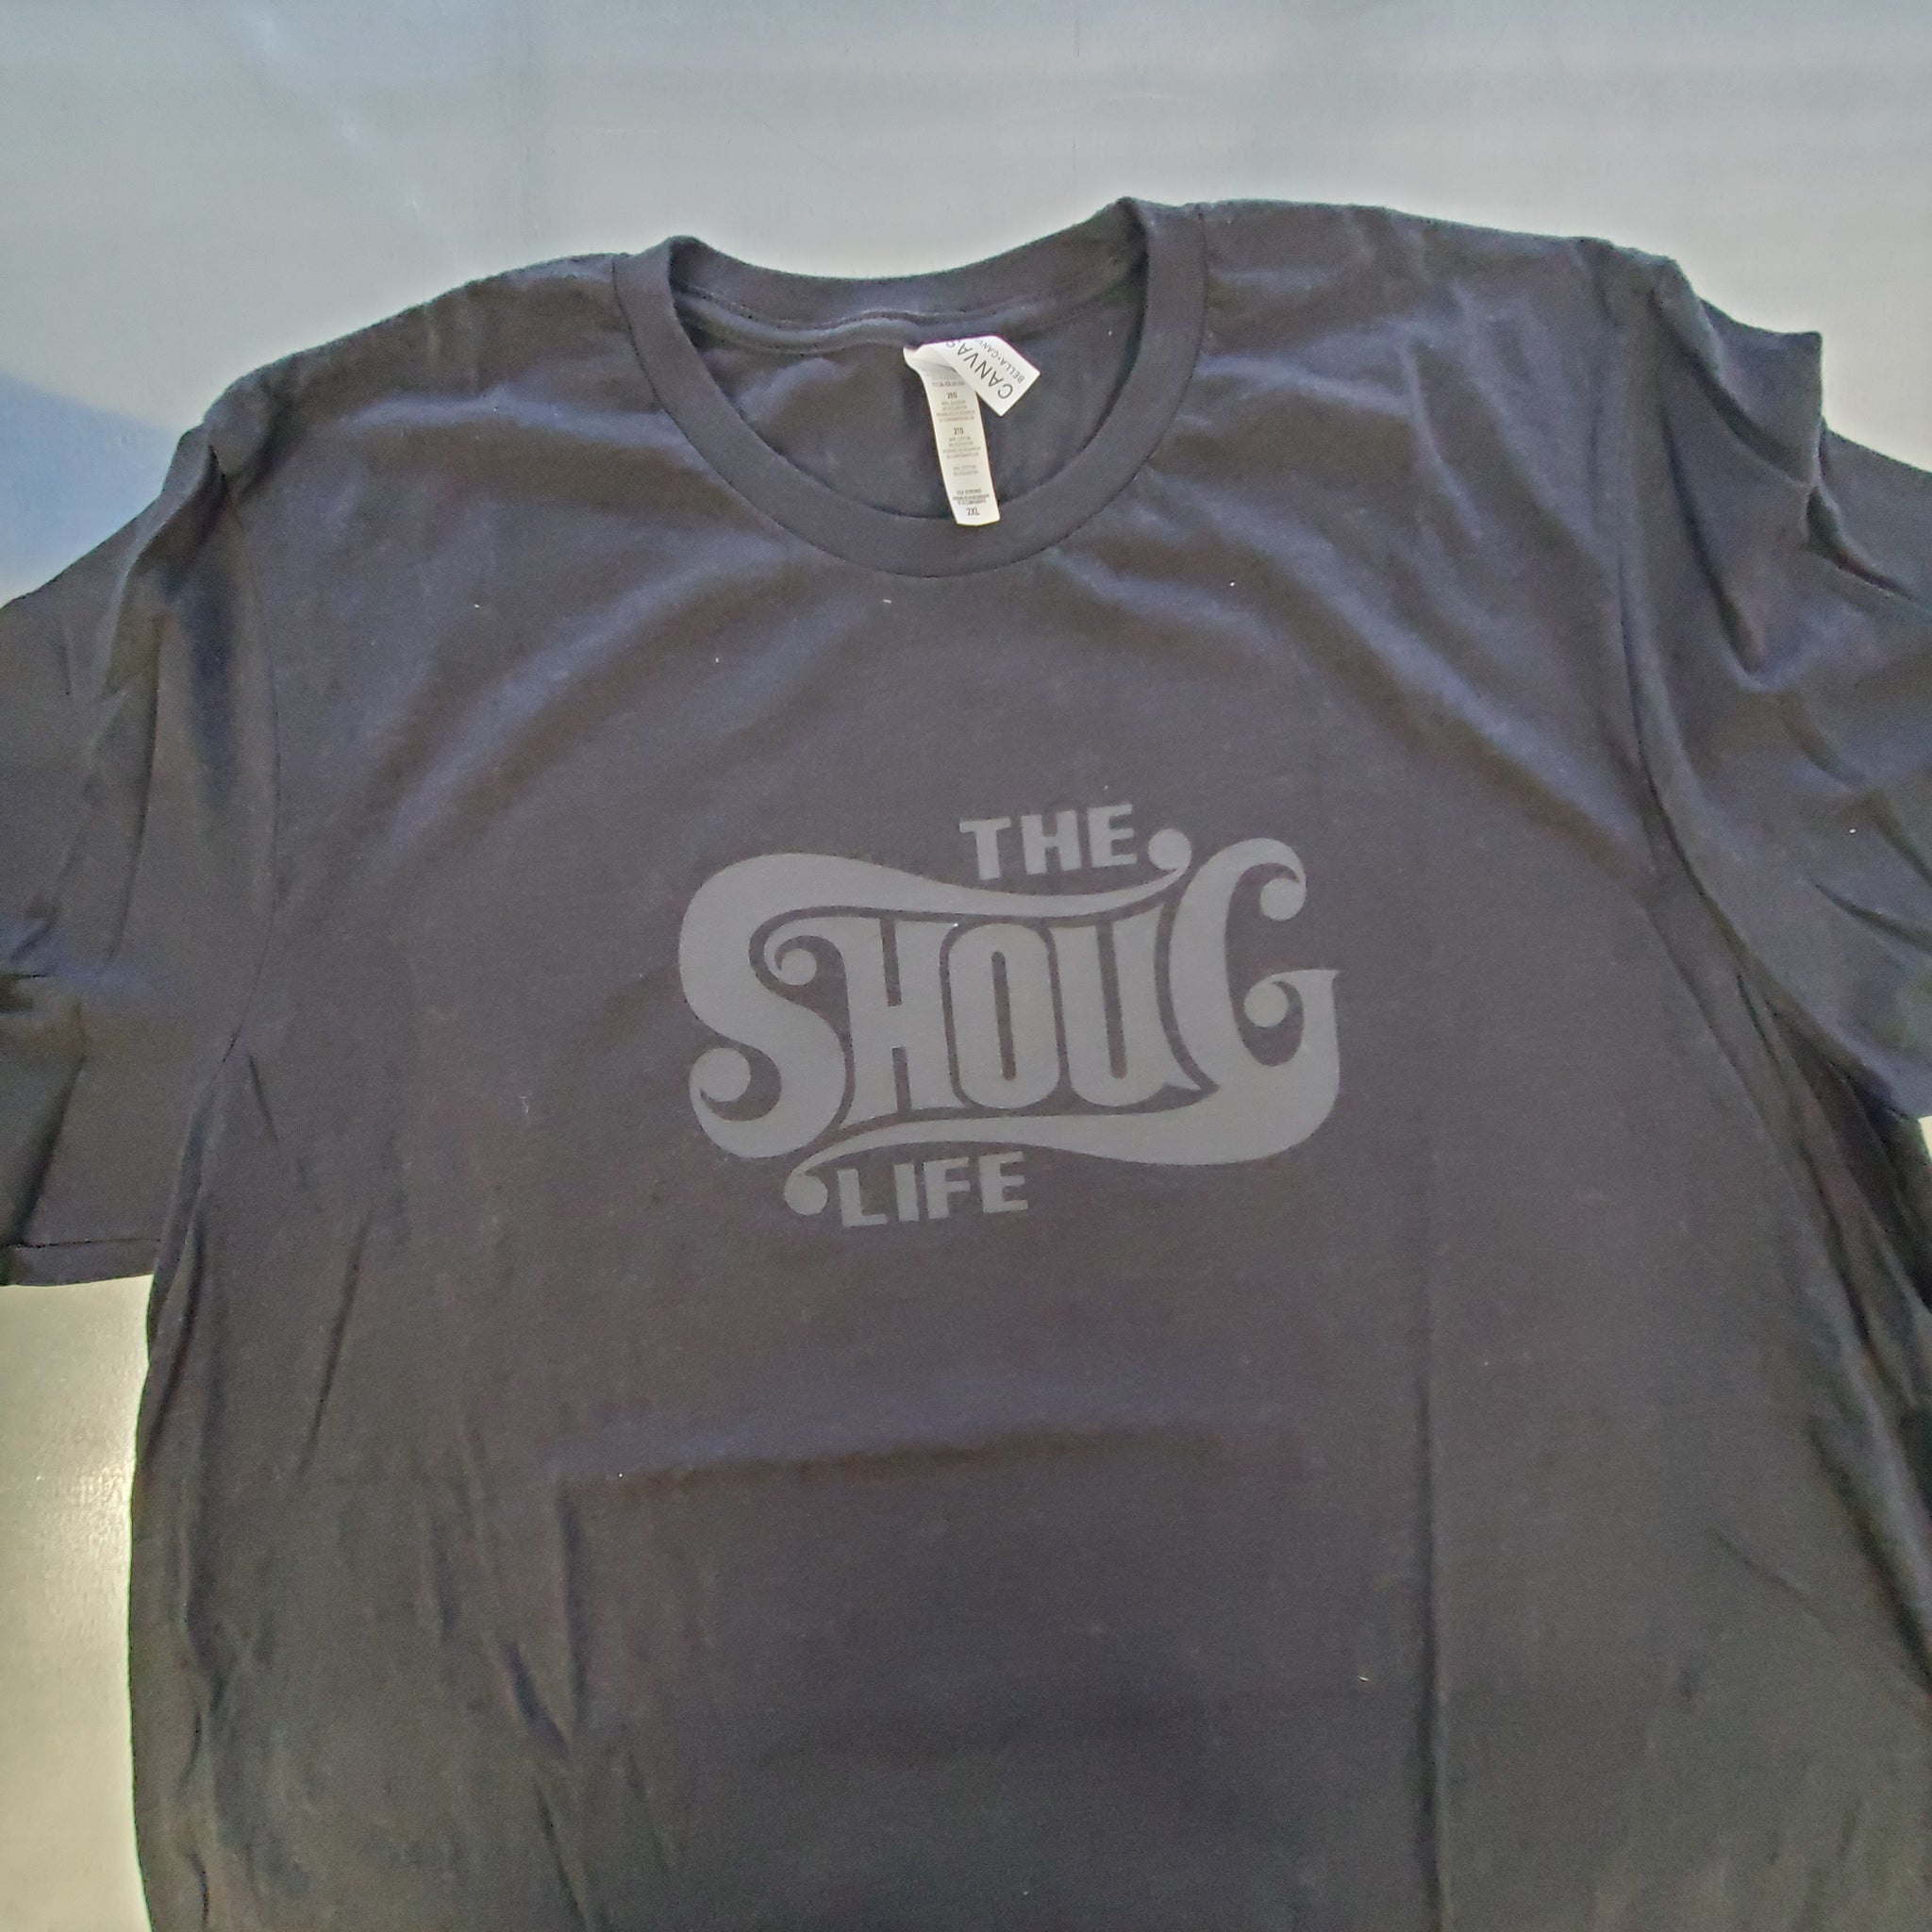 The Shoug Life T-shirts